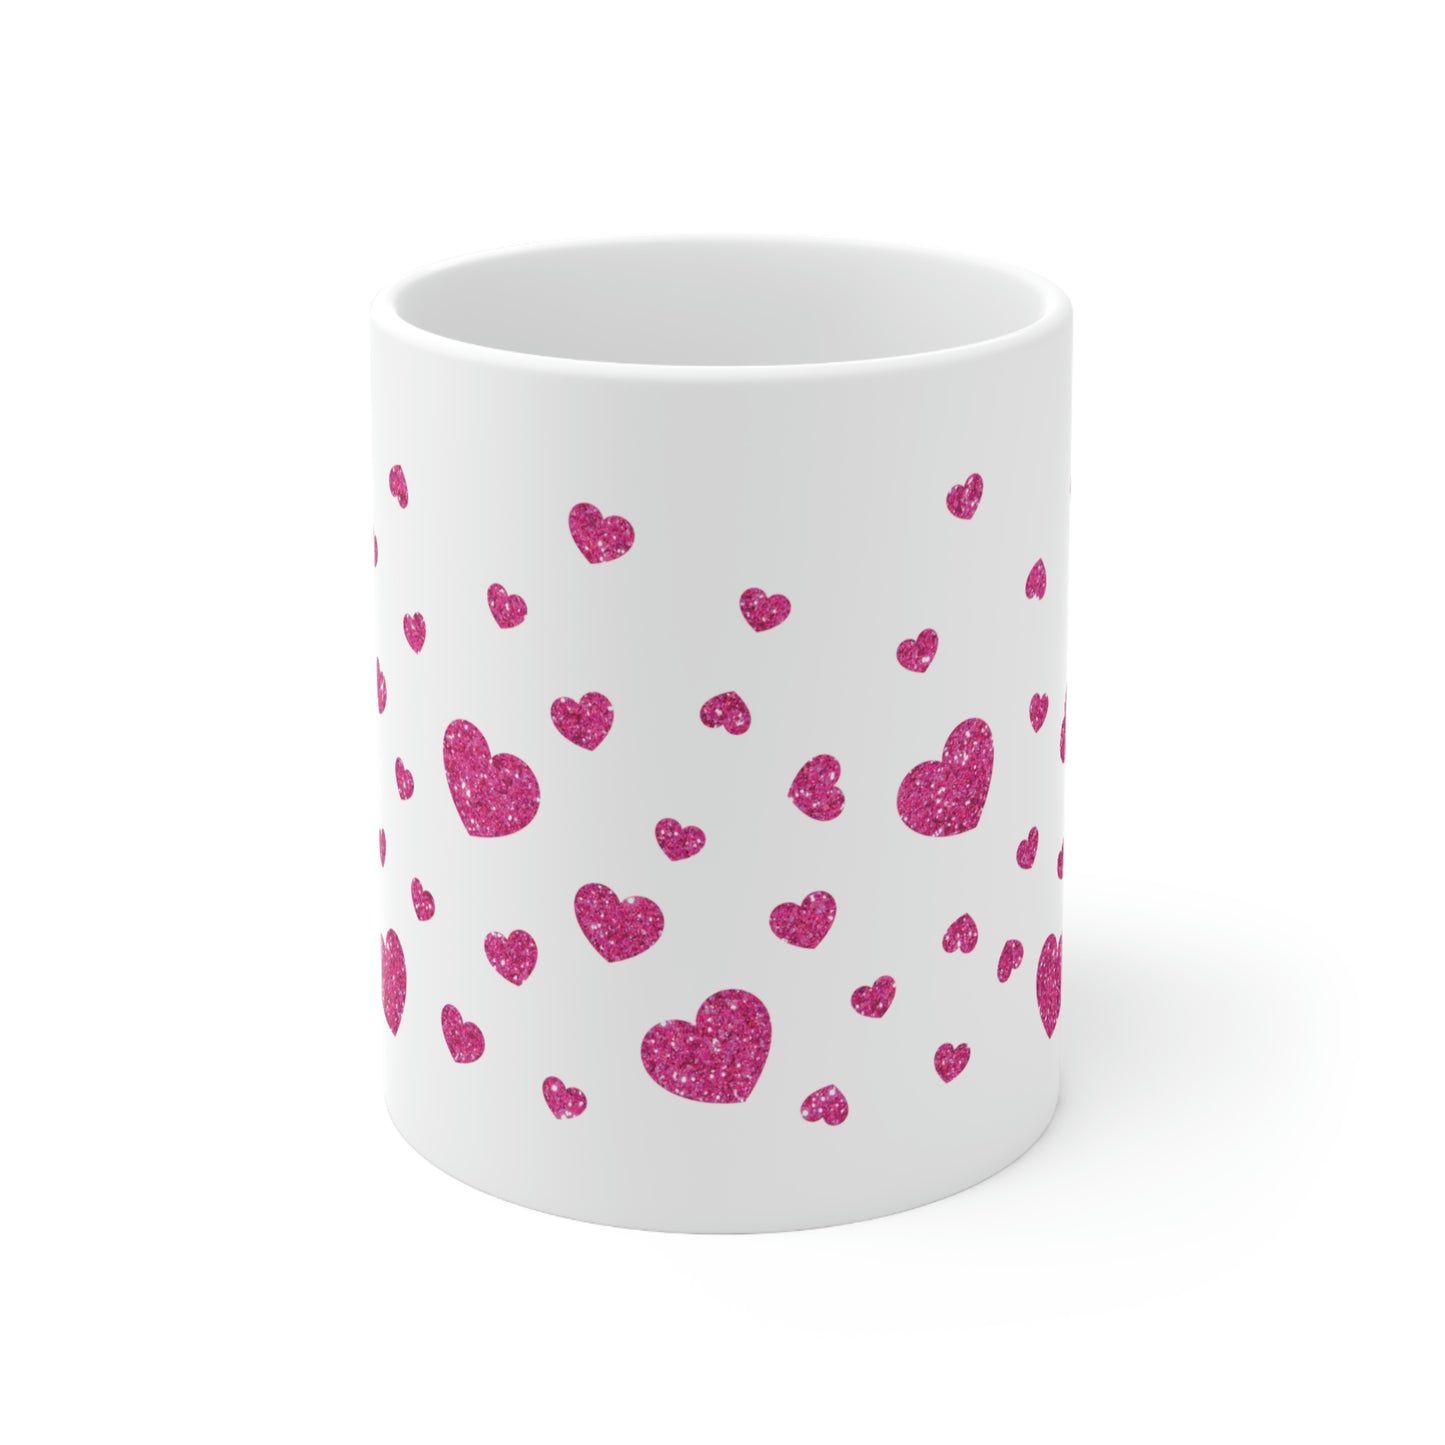 Full of Love Ceramic Mug